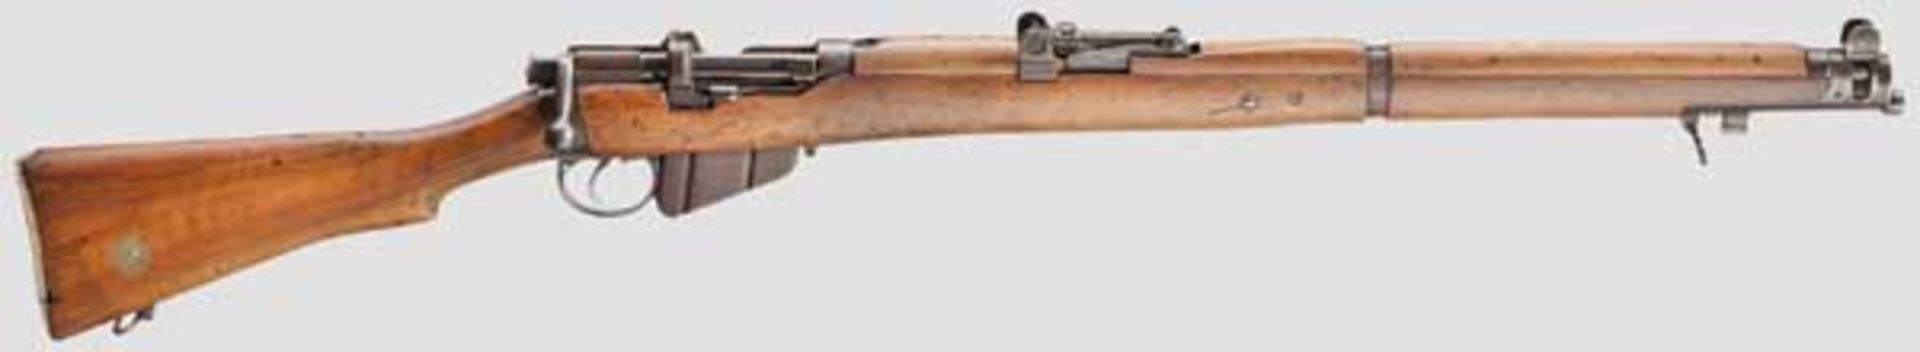 Enfield (SMLE) Rifle Mk III Kal. .303 brit., Nr. W41690. Nummerngleich. Lauf eingefettet.